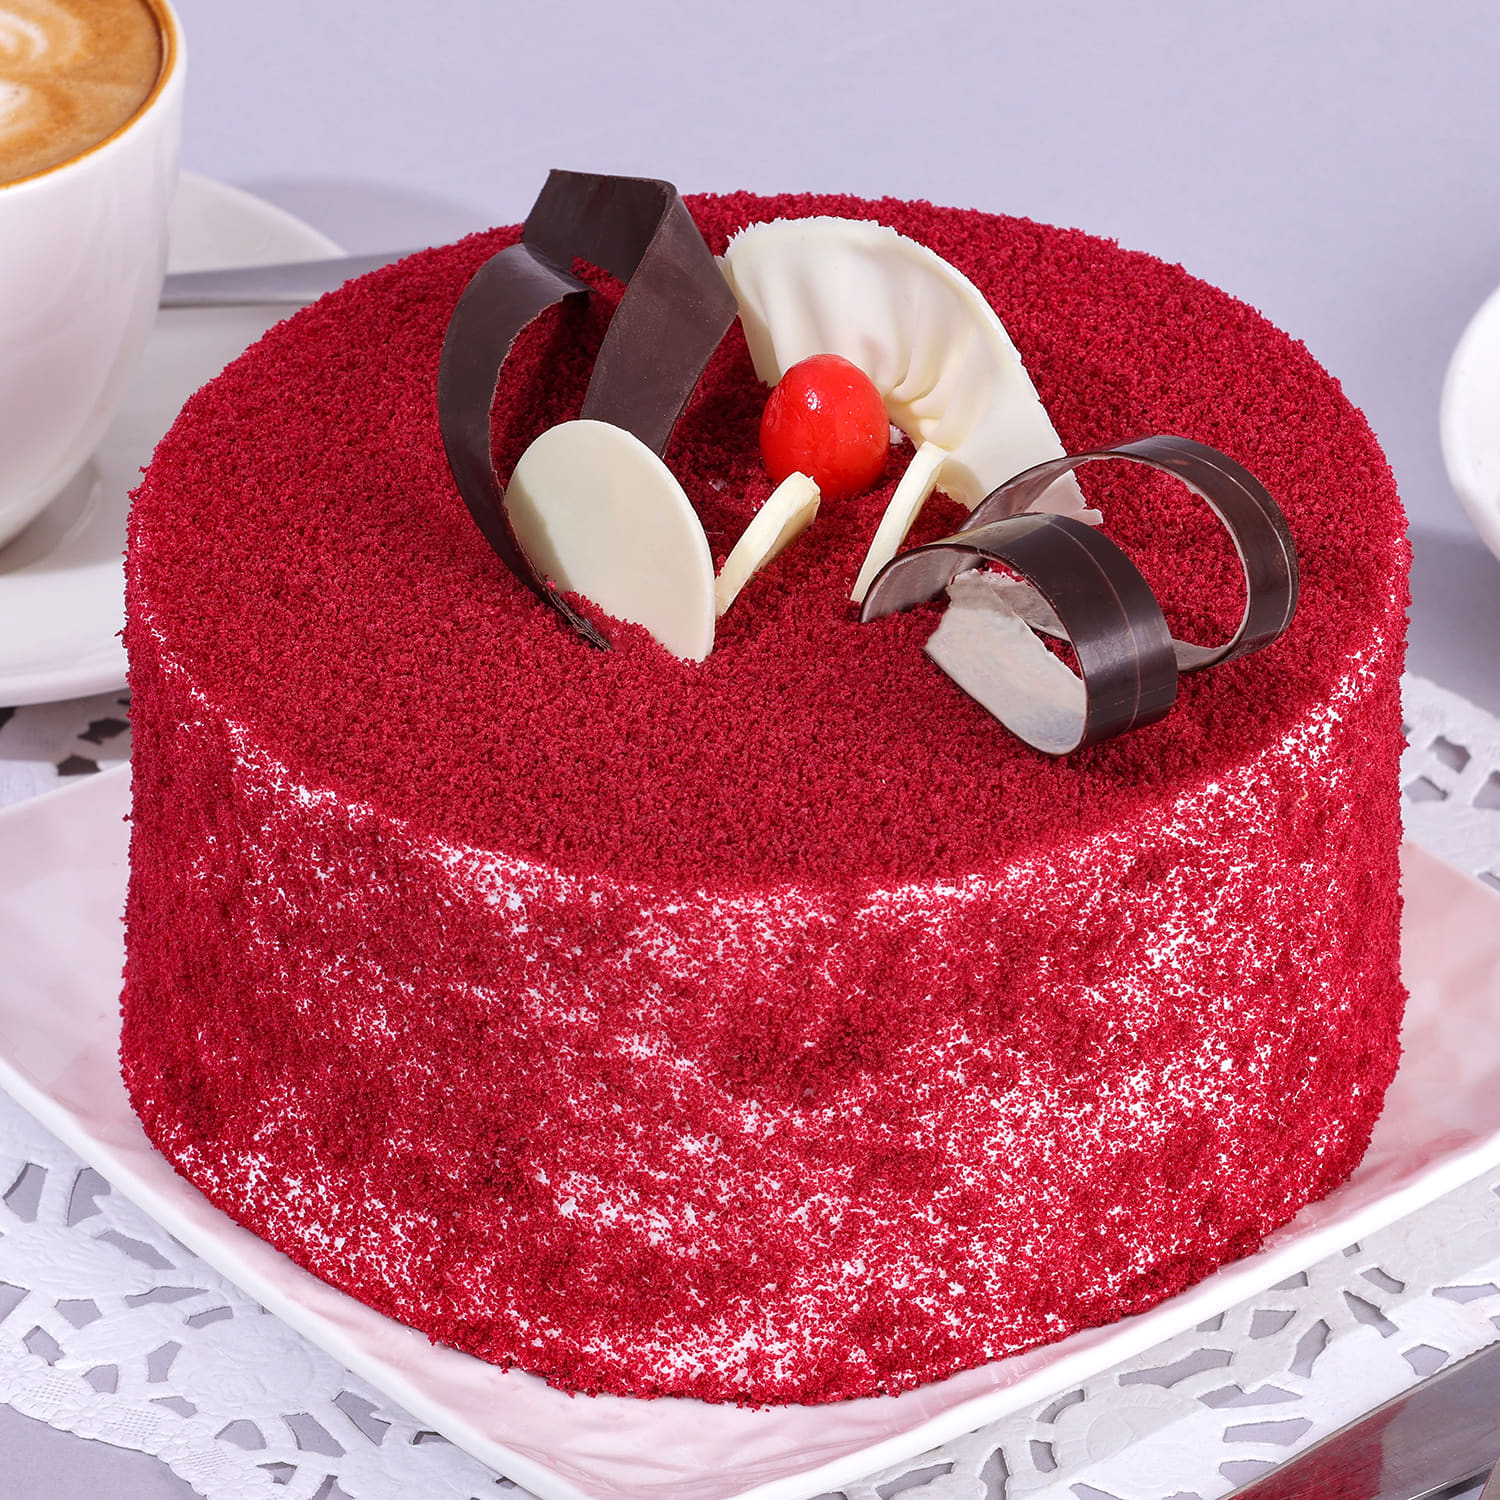 Red Velvet Cakes | Best Red Velvet Cakes in Lucknow